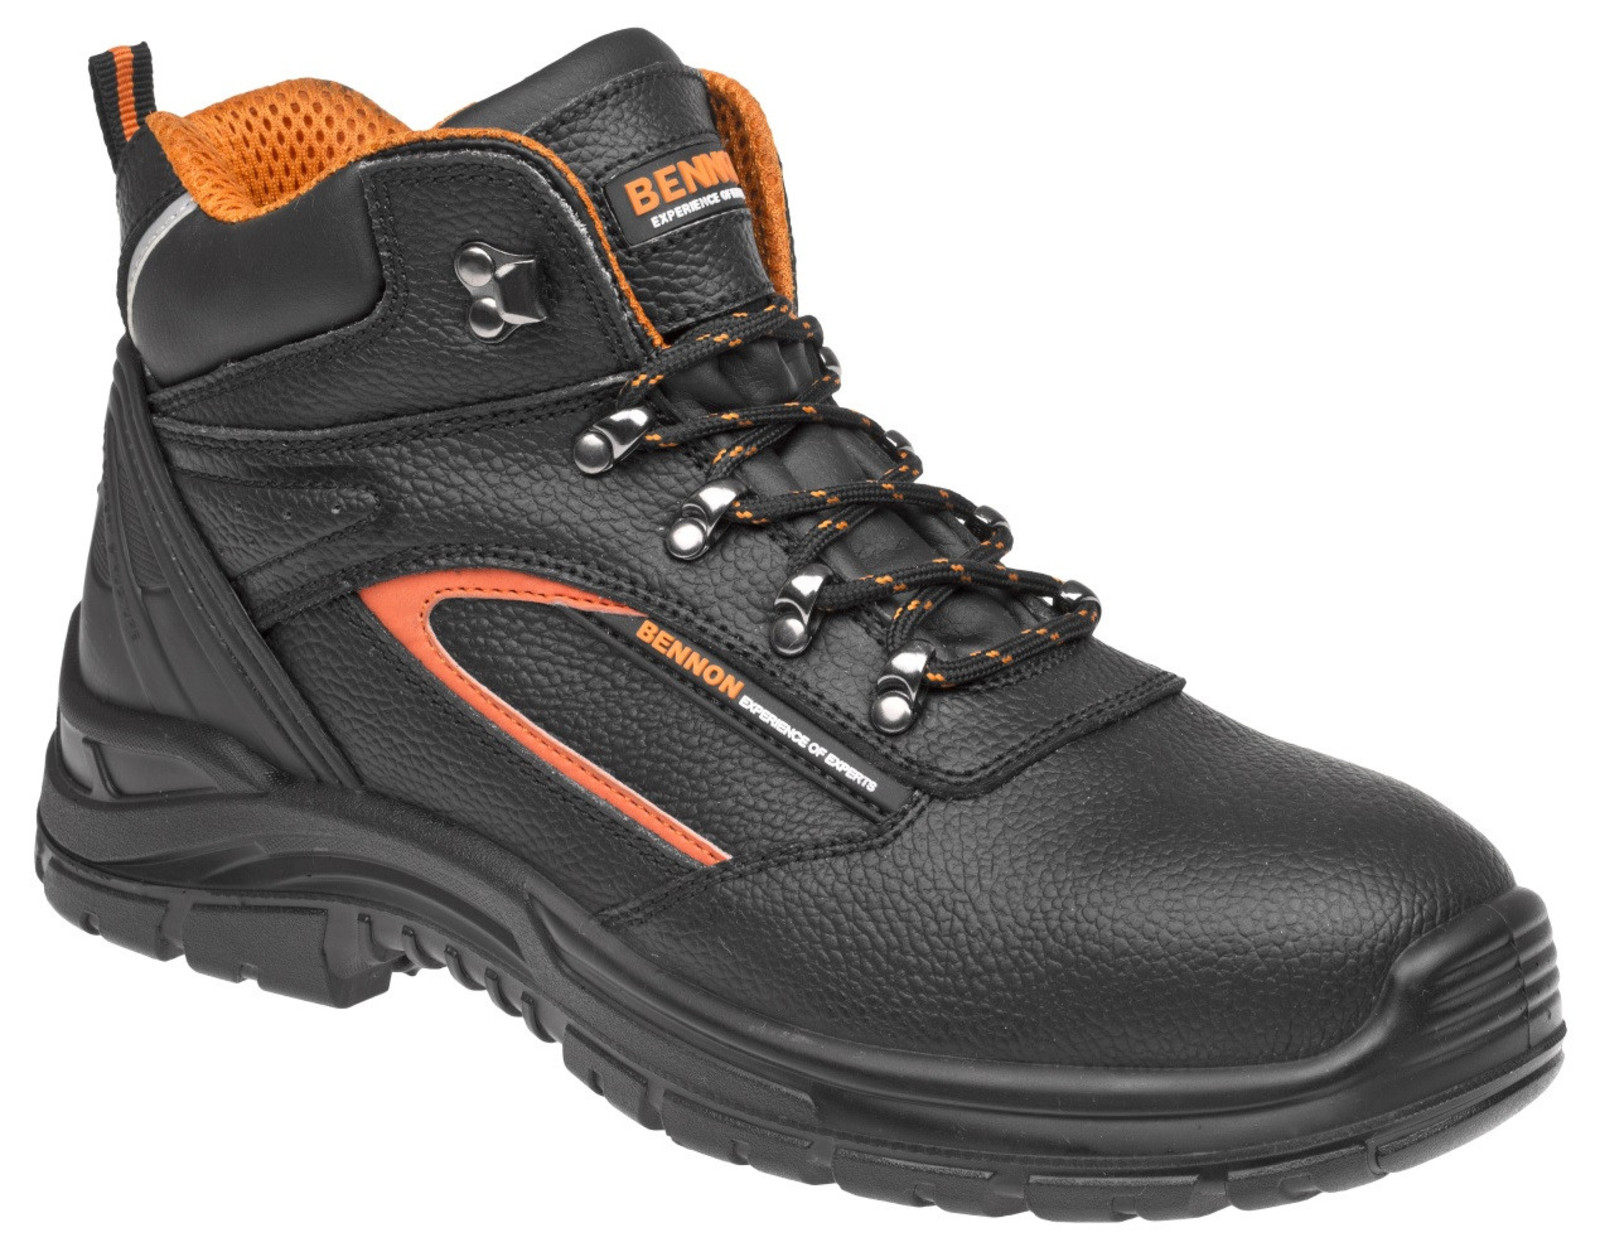 Pracovné topánky Bennon Fortis O2  - veľkosť: 42, farba: čierna